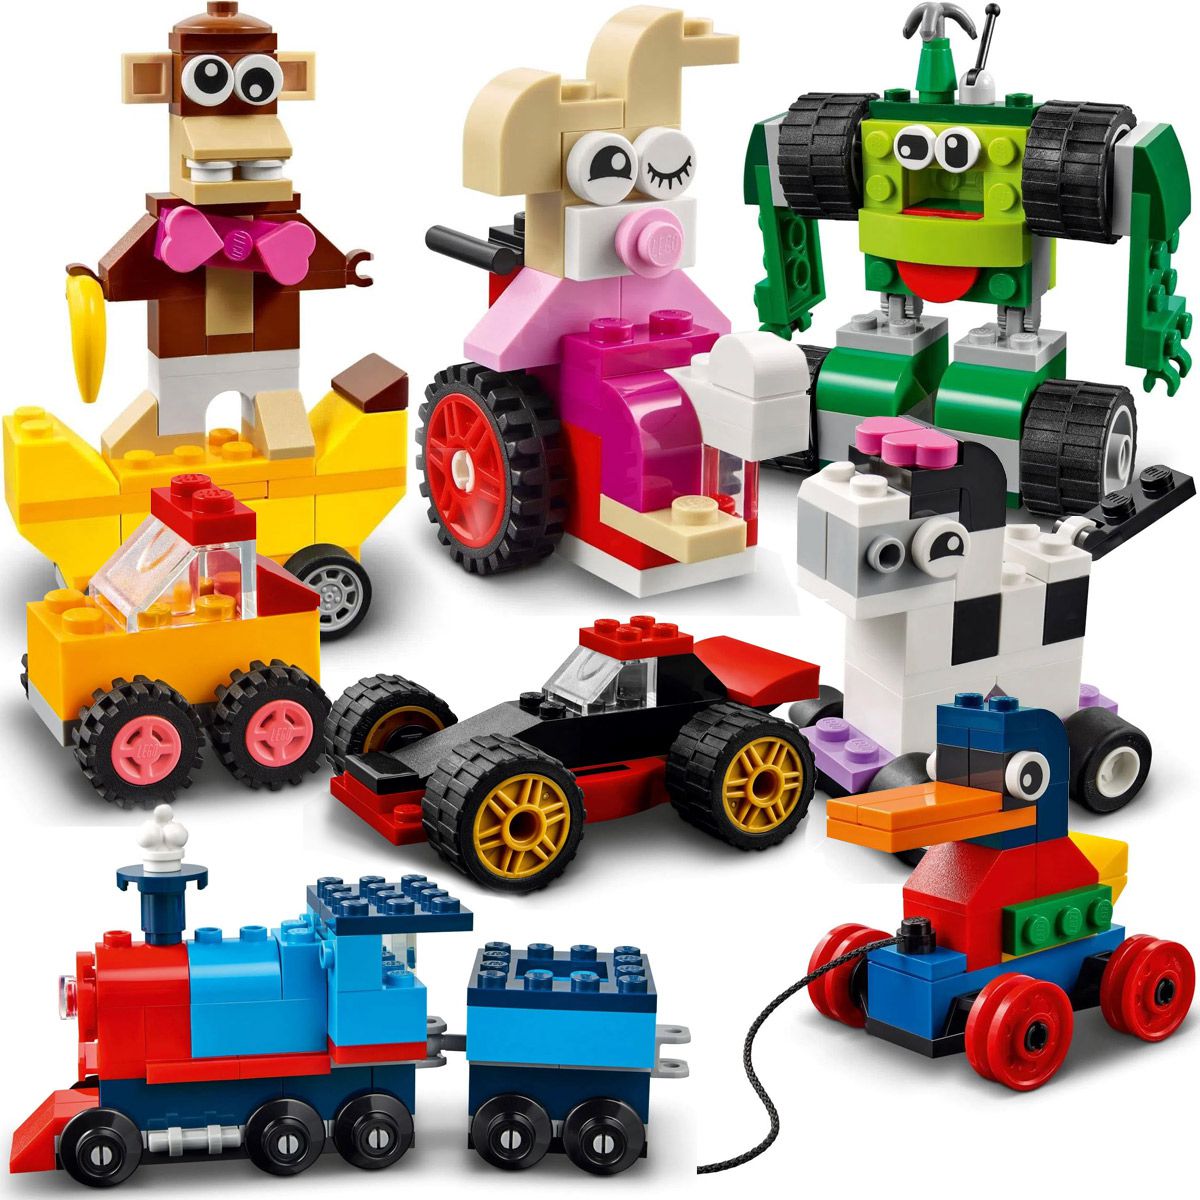 Brinquedo Infantil Lego Classic Blocos Casas e Peças Divertidas Blocos de  Montar +4 Anos 270 Peças - Baby&Kids